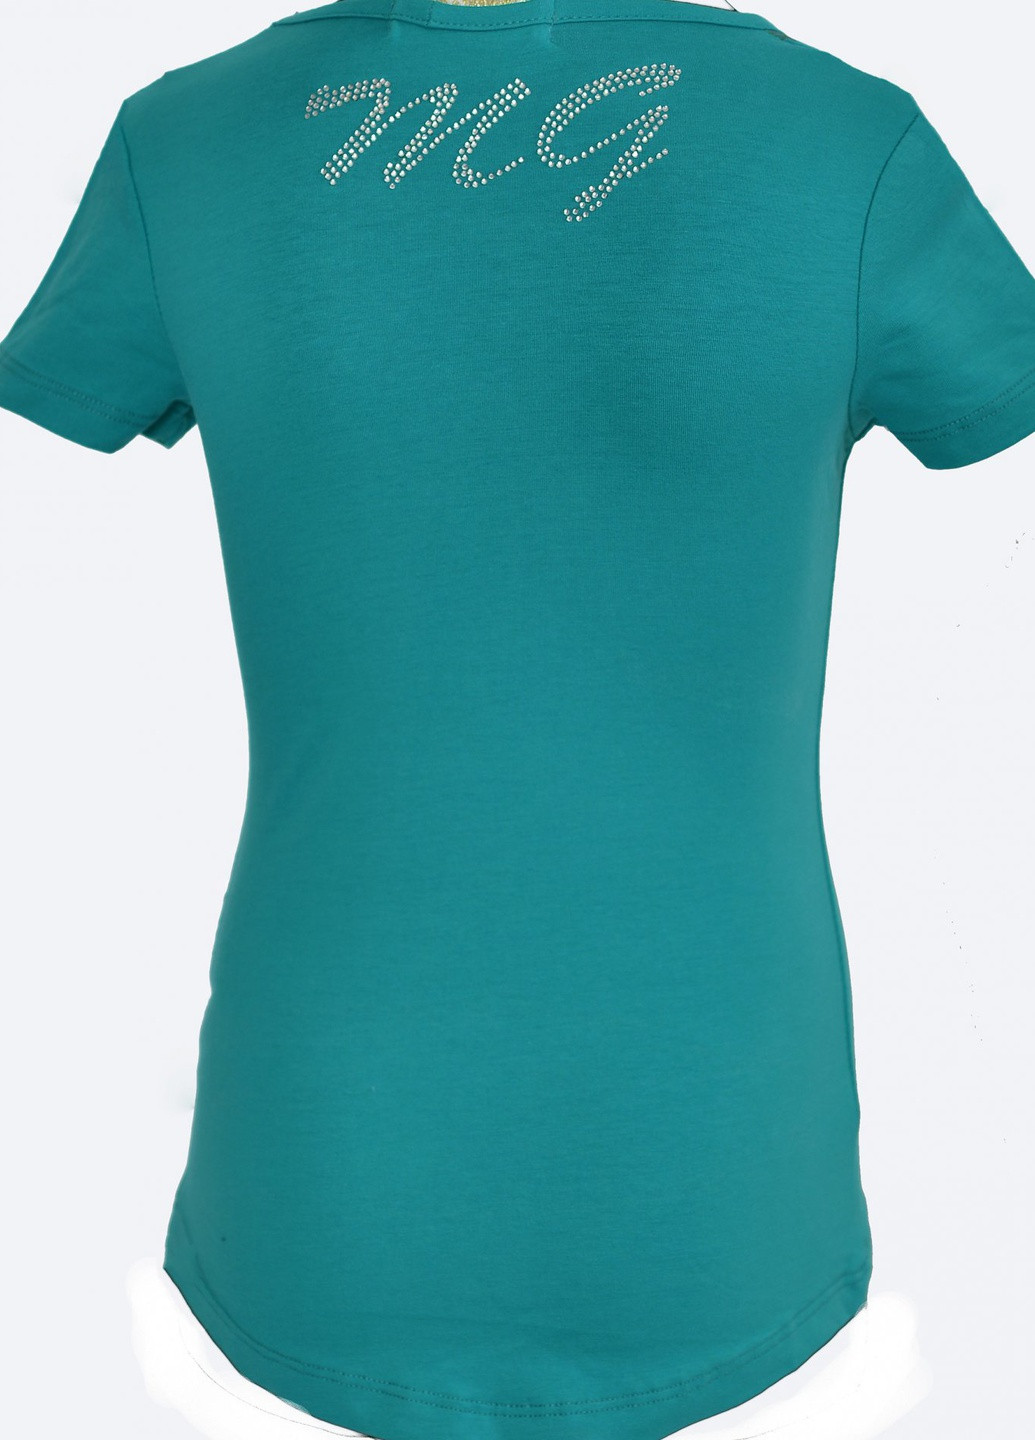 Зелена футболки футболка на дівчаток (101)11855-736 Lemanta